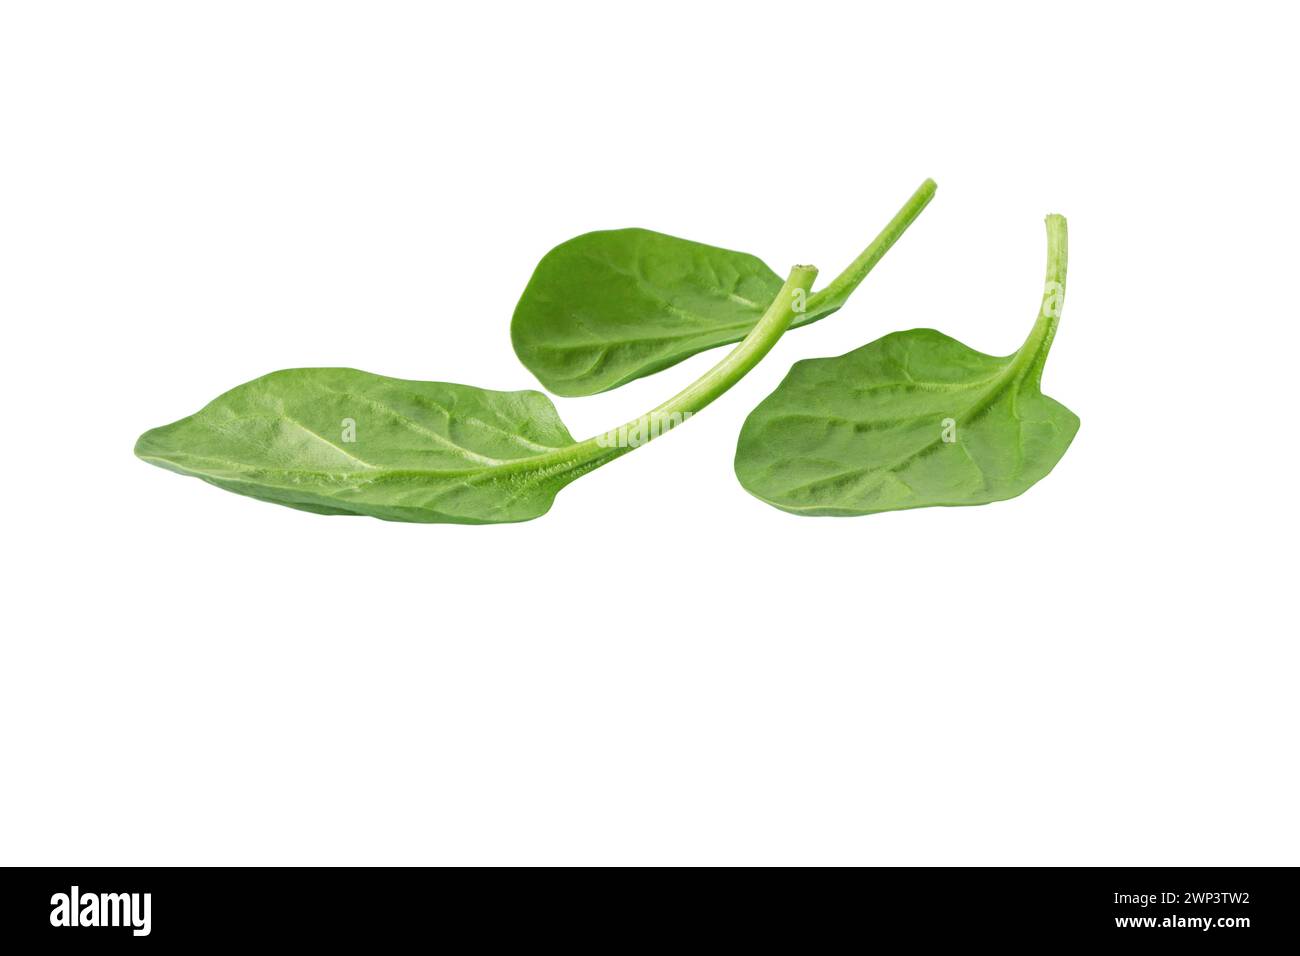 Tas de feuilles d'épinards verts isolé sur blanc. Légumes à feuilles. Alimentation saine et régime végétarien. Plante Spinacia oleracea. Banque D'Images